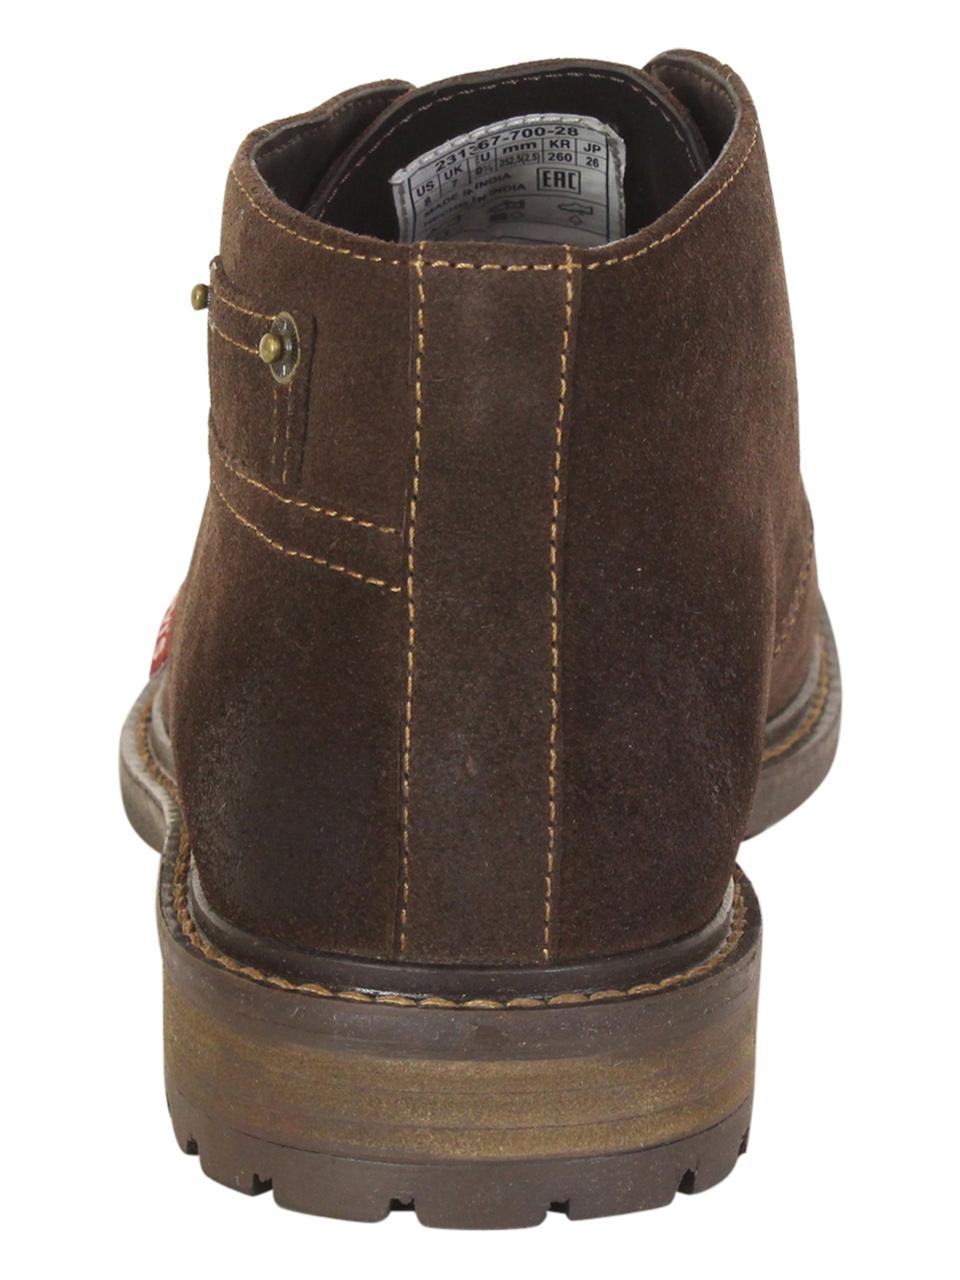 Levi's Men's Cambridge-Suede Levis Chukka Boots Shoes 